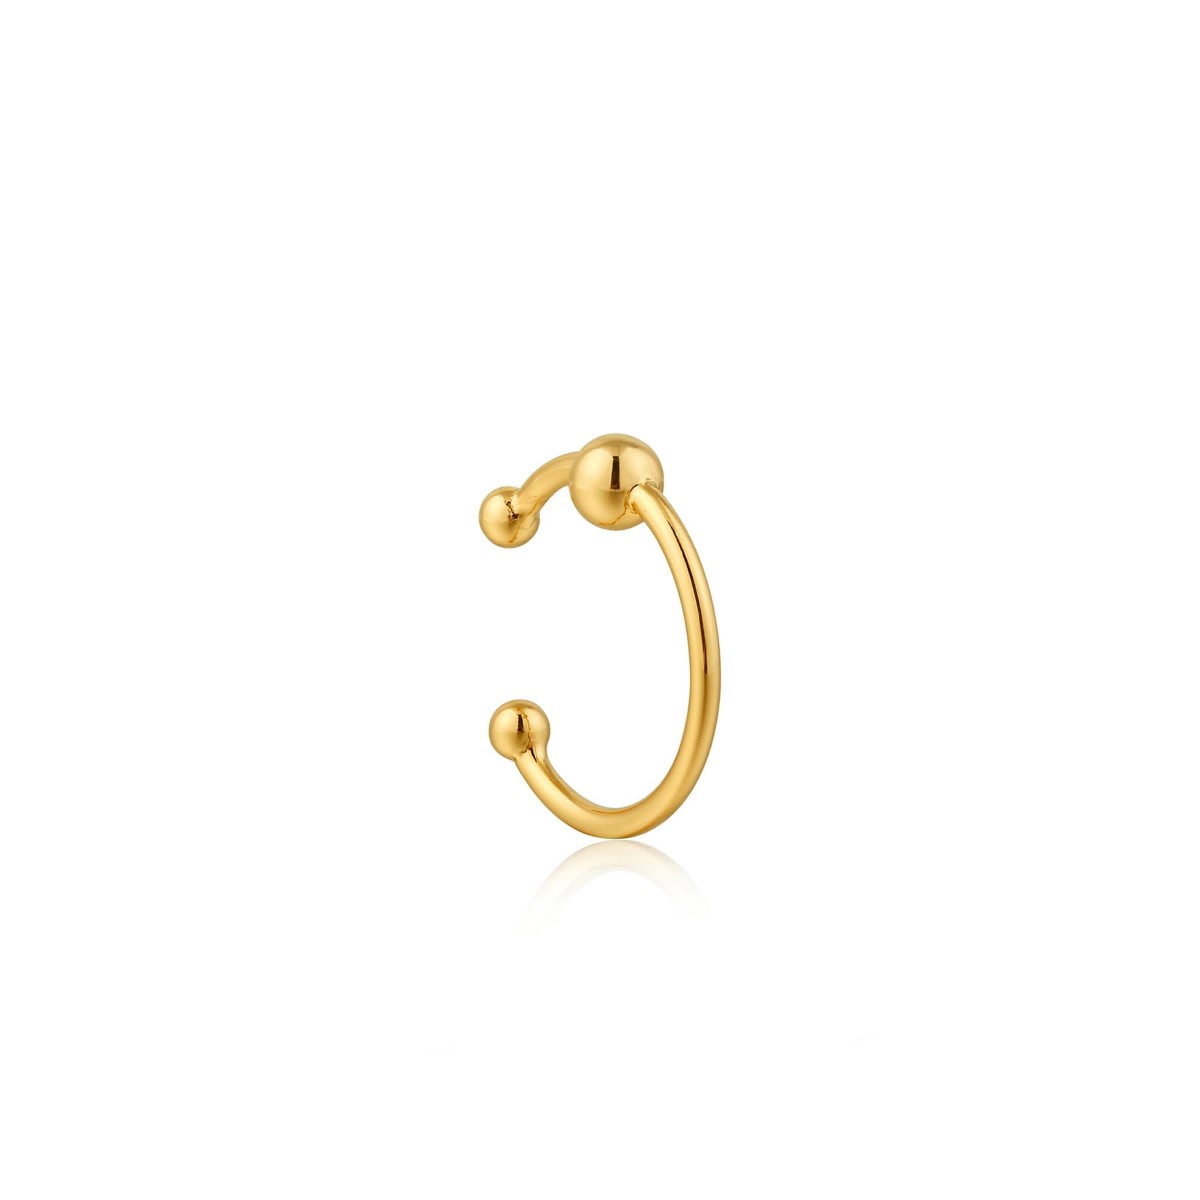 Ania Haie Orbit Gold Ear Cuff E001-05G